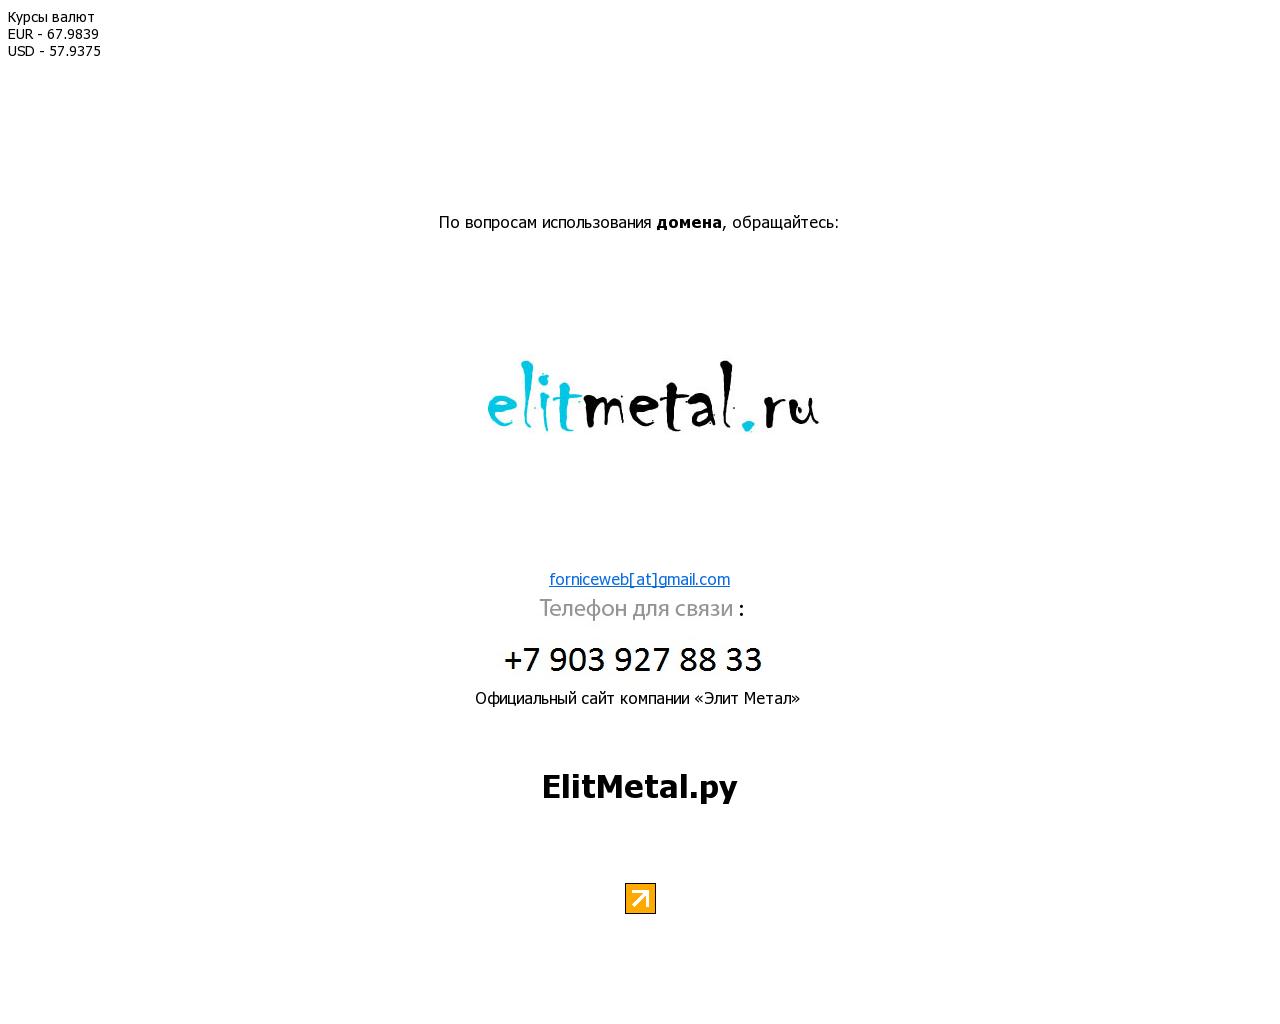 Изображение сайта elitmetal.ru в разрешении 1280x1024